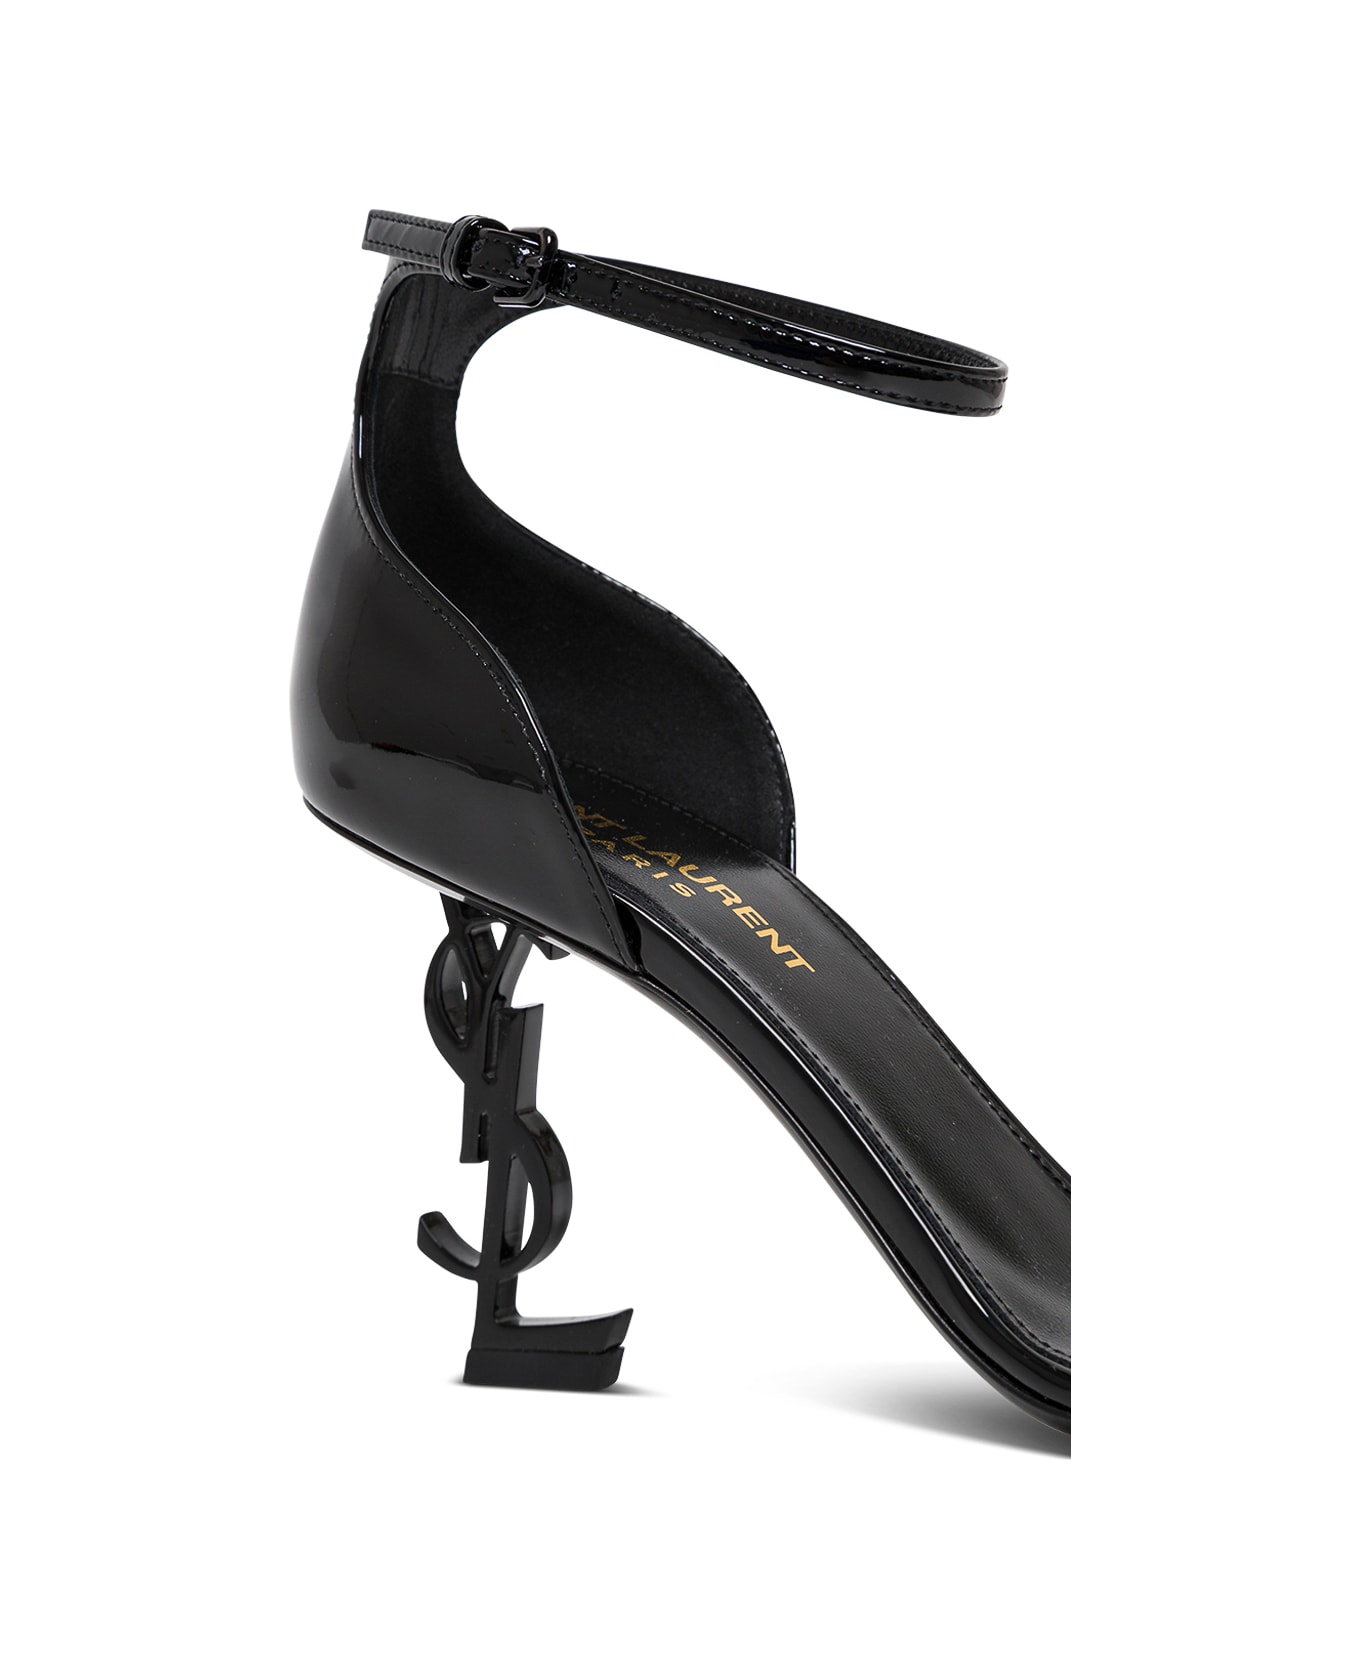 Saint Laurent Opyum Black Patent Leather Sandals - Black